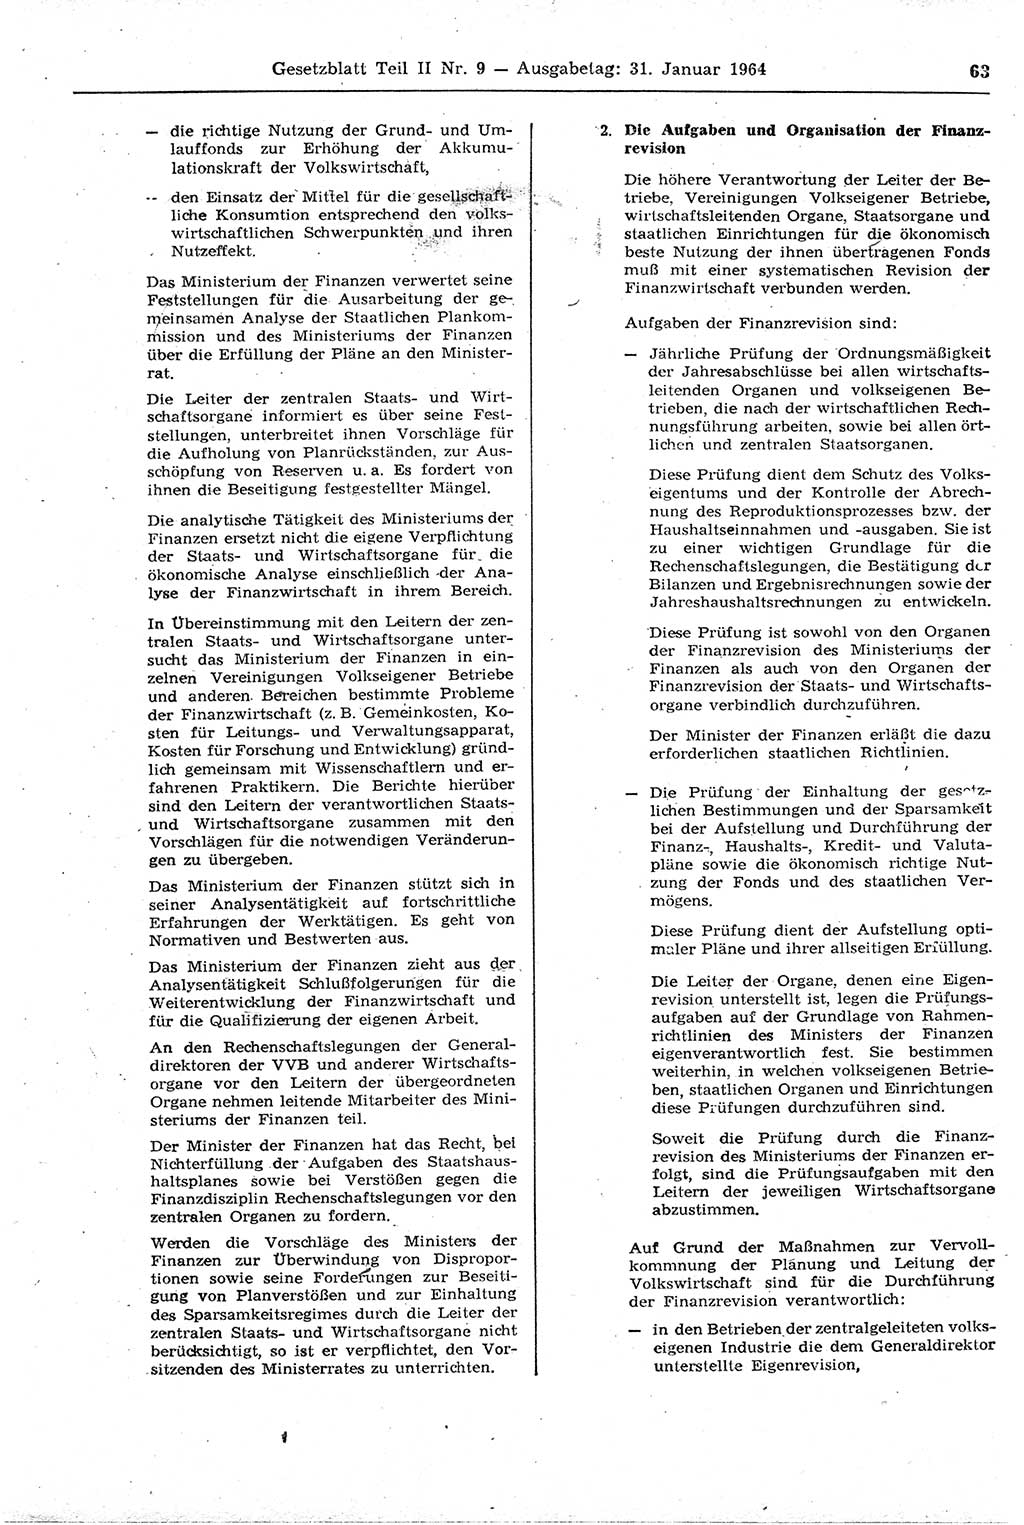 Gesetzblatt (GBl.) der Deutschen Demokratischen Republik (DDR) Teil ⅠⅠ 1964, Seite 63 (GBl. DDR ⅠⅠ 1964, S. 63)